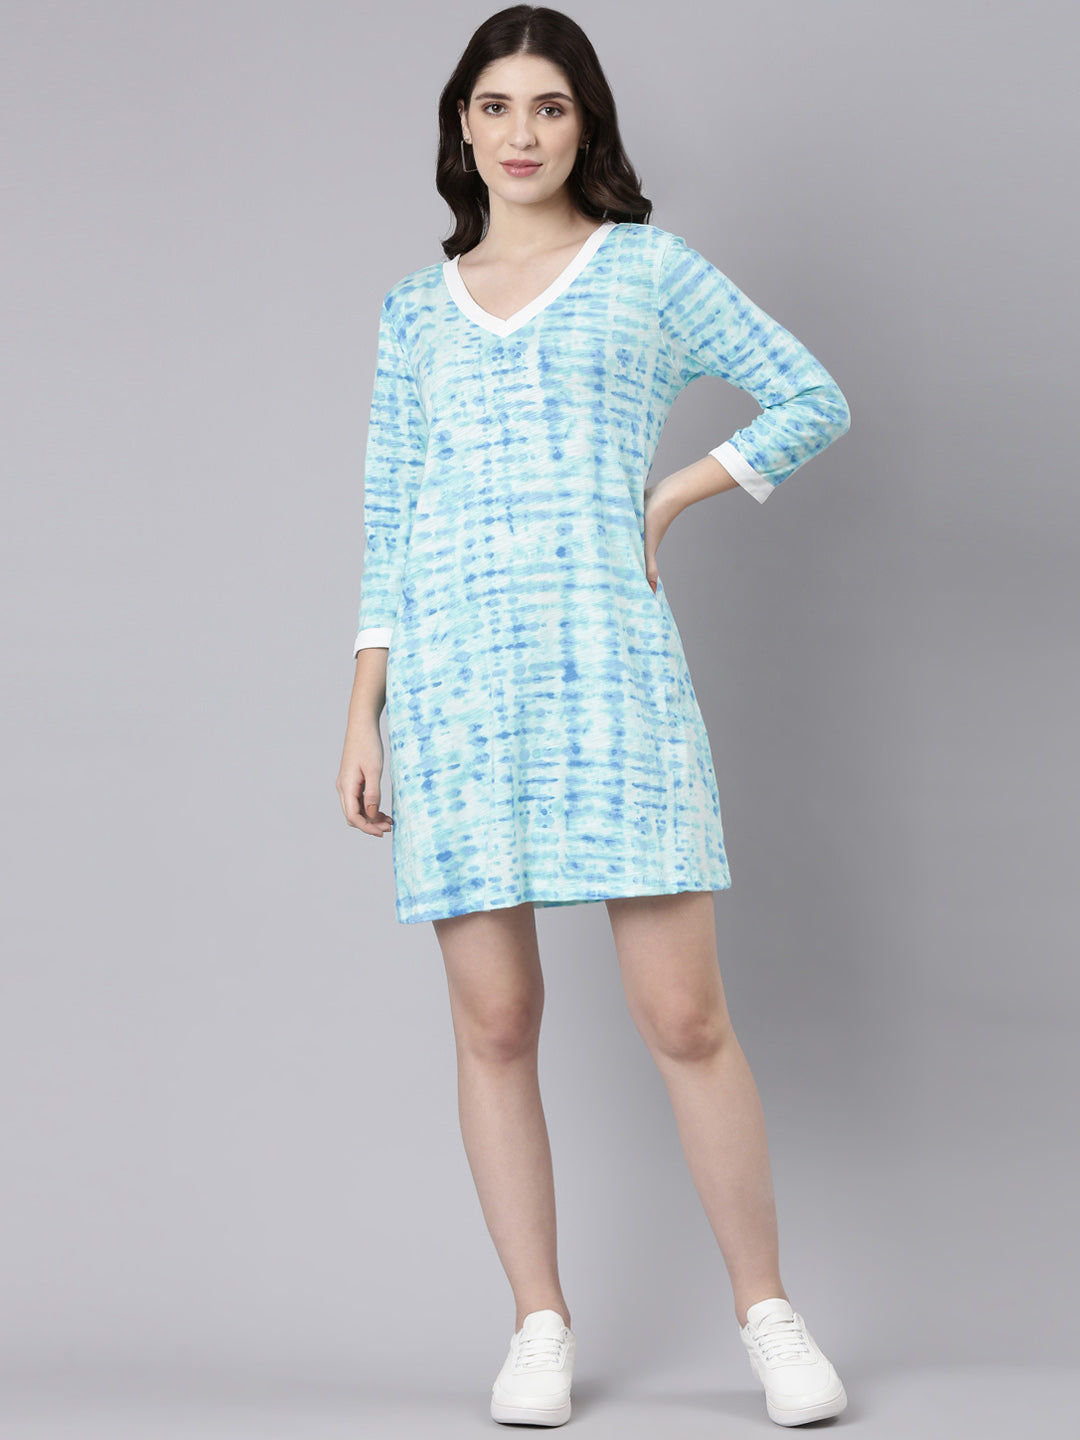 Buy TheShaili Tie & Dye Dress V Neck Knee Length /stylish / trendy on online